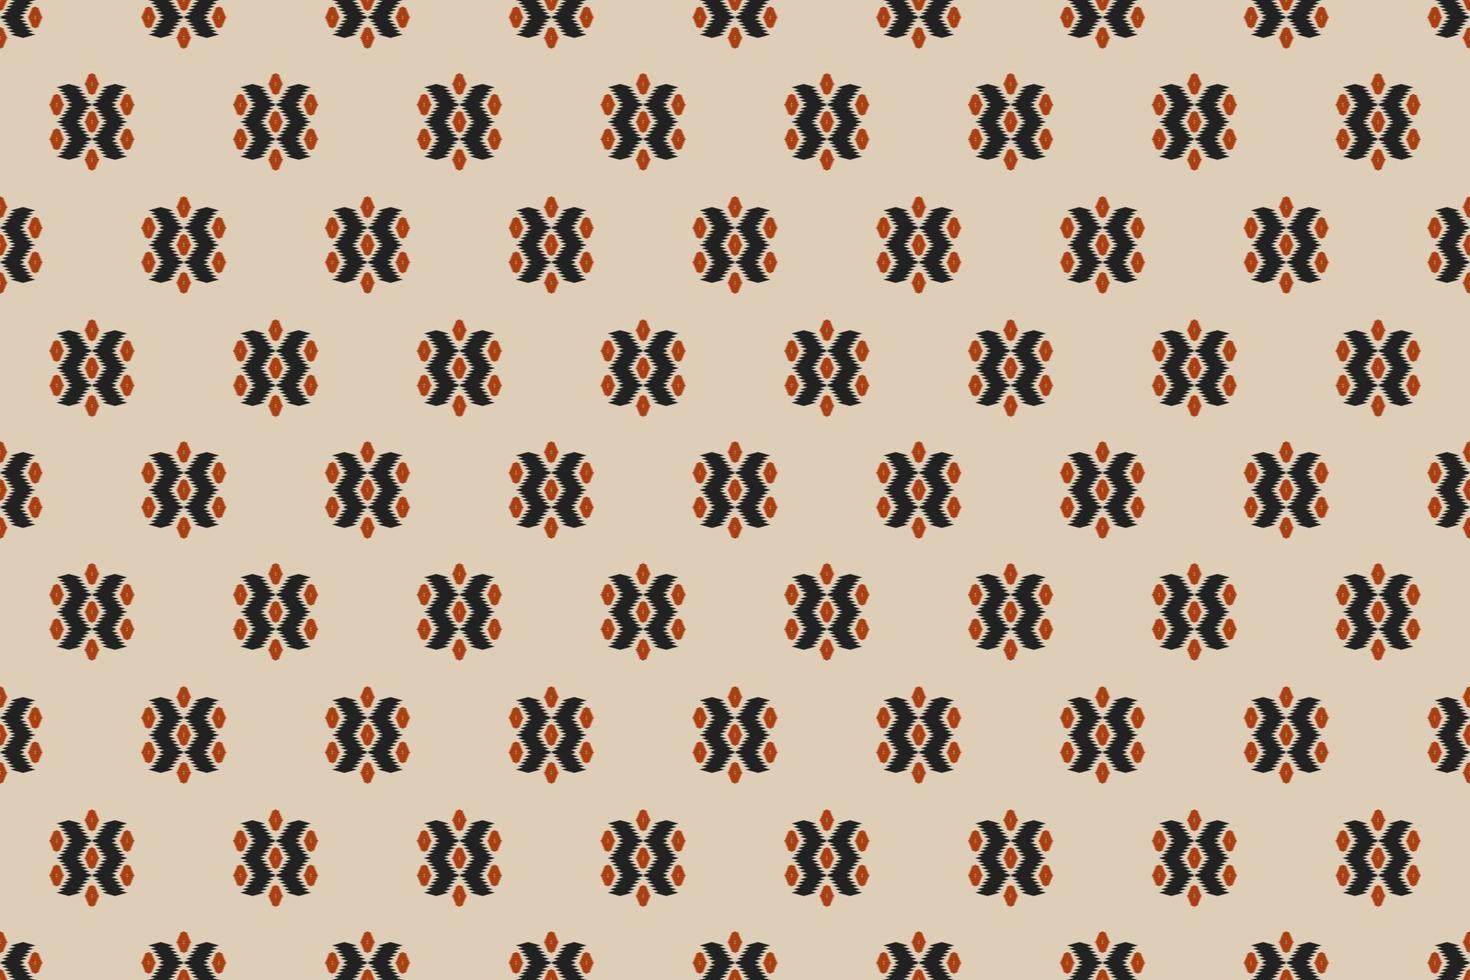 arte de padrão étnico de tecido. padrão sem emenda ikat em tribal. estilo americano, mexicano. design para plano de fundo, papel de parede, ilustração vetorial, tecido, vestuário, tapete, têxtil, batik, bordado. vetor